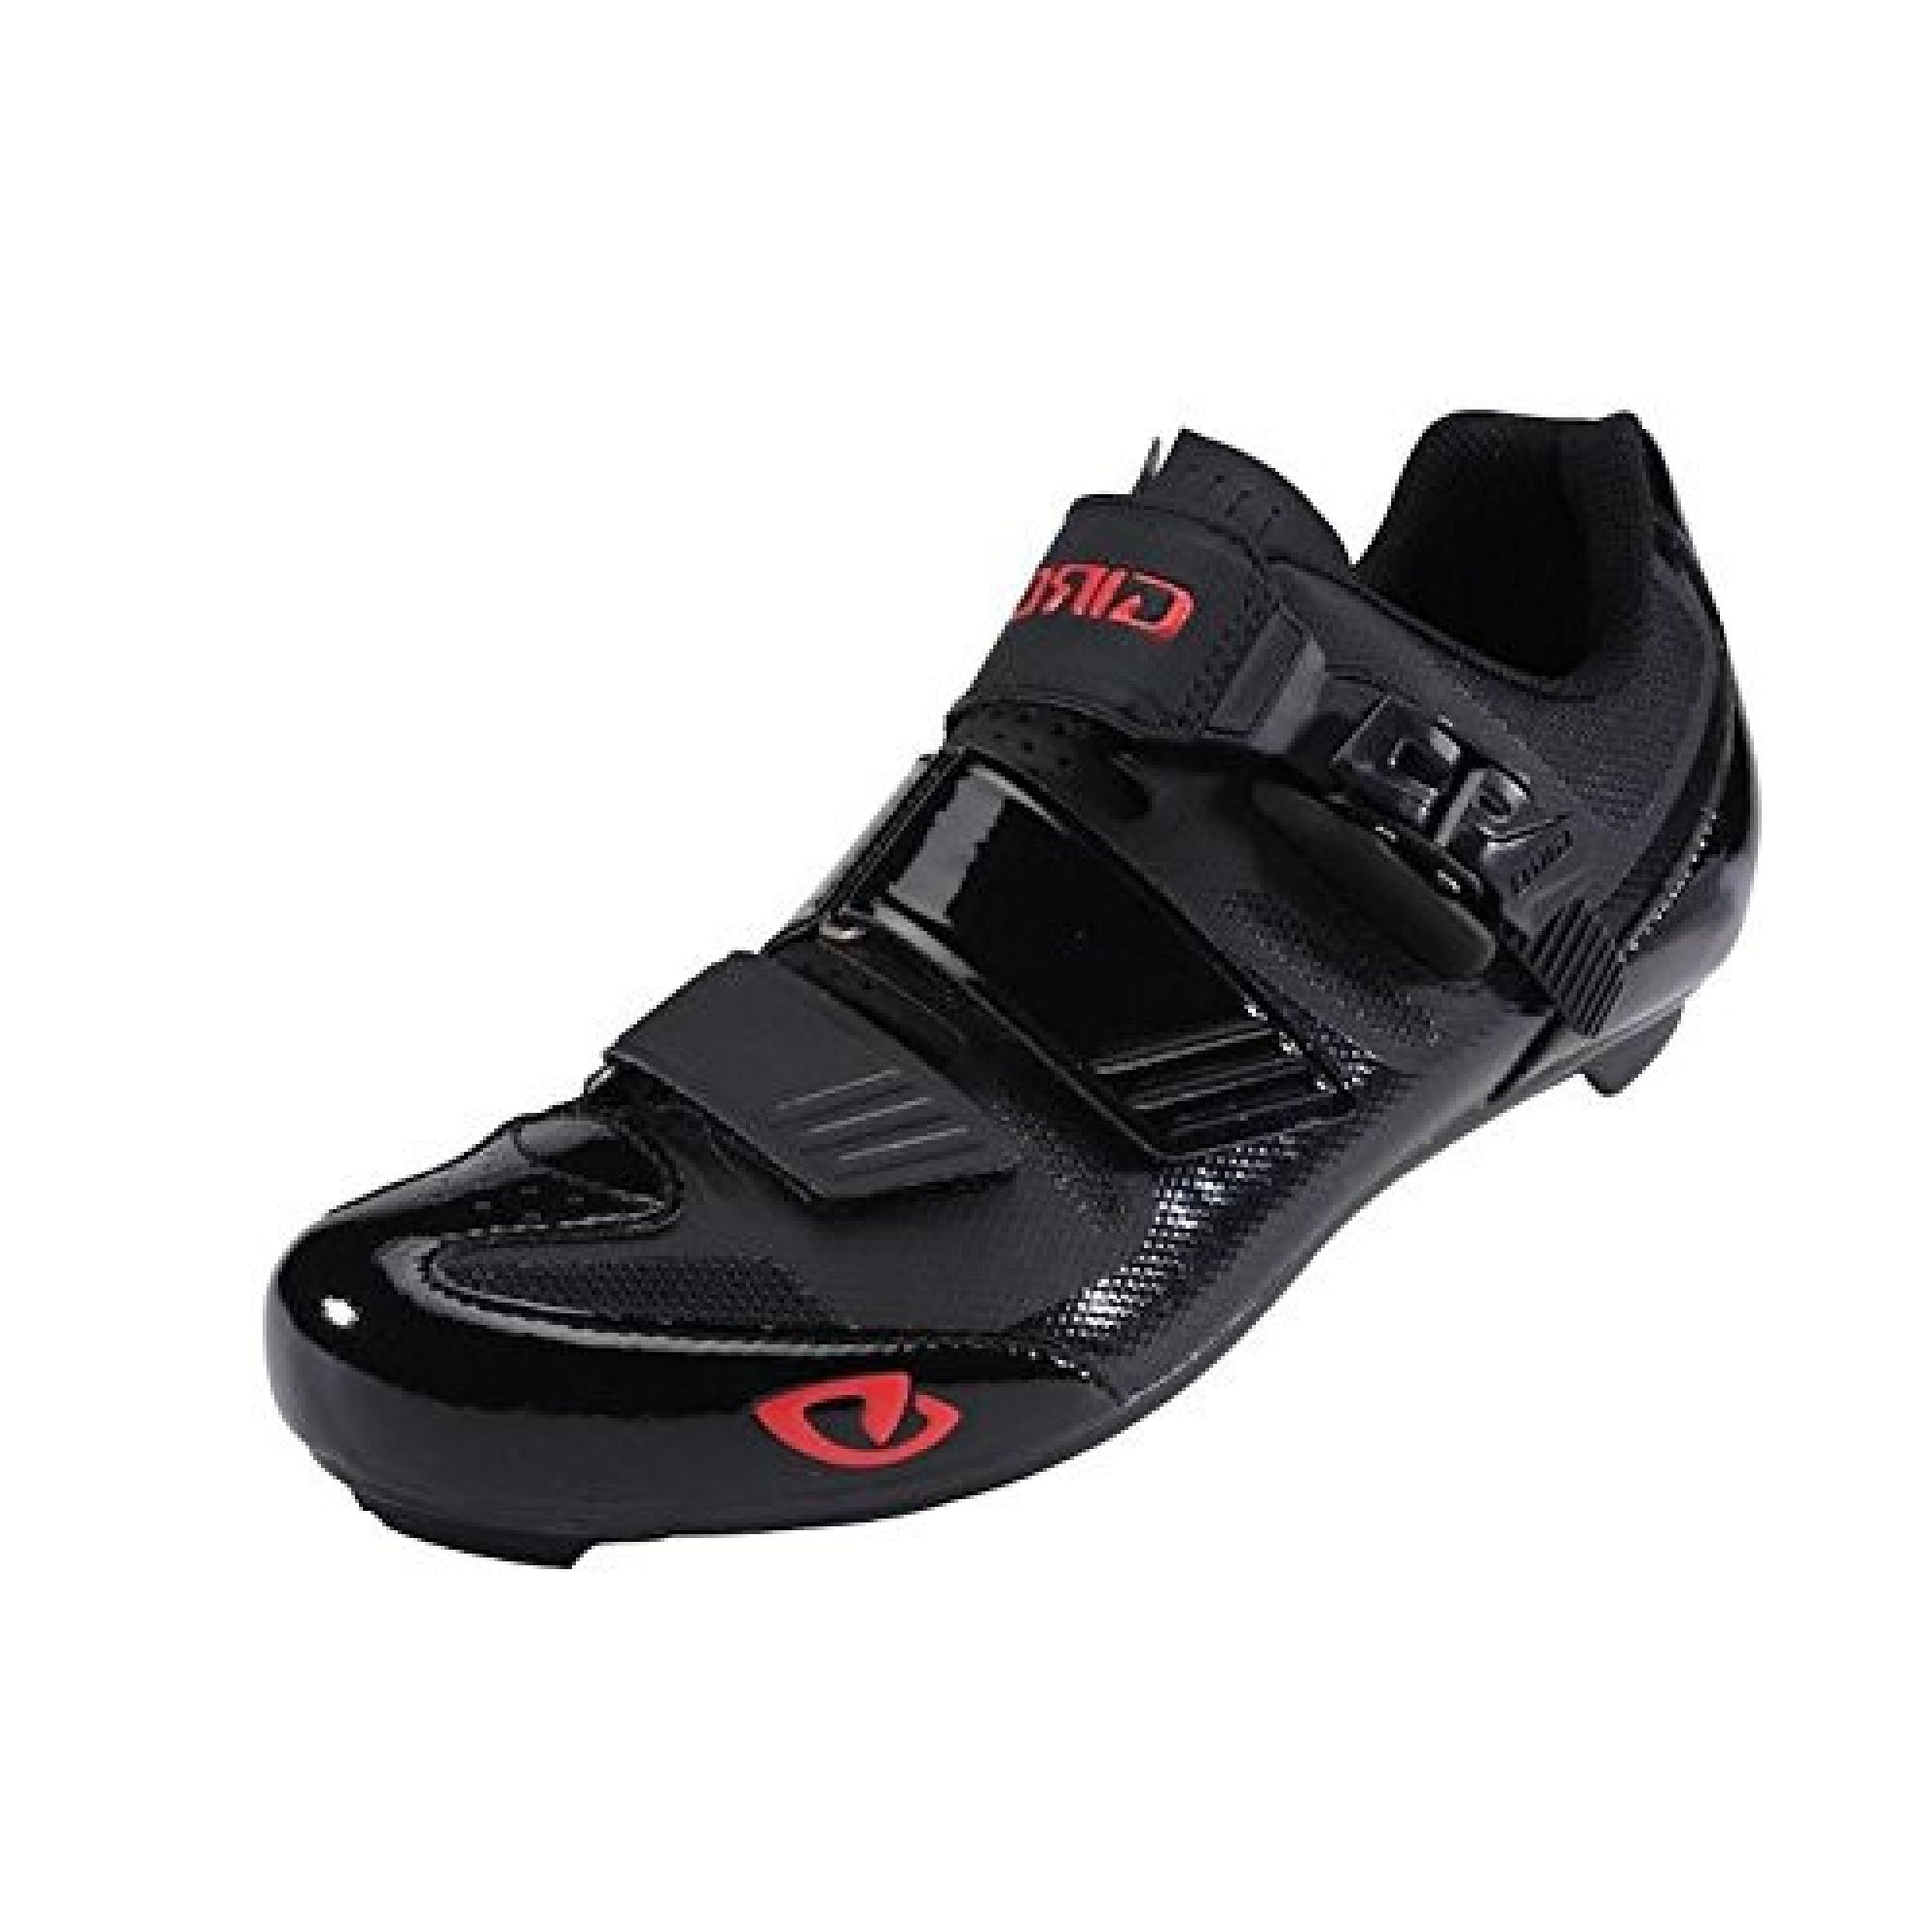 Giro APECKX II Shoe - Openbox Black Bright Red - Giro Bike Bike Shoes